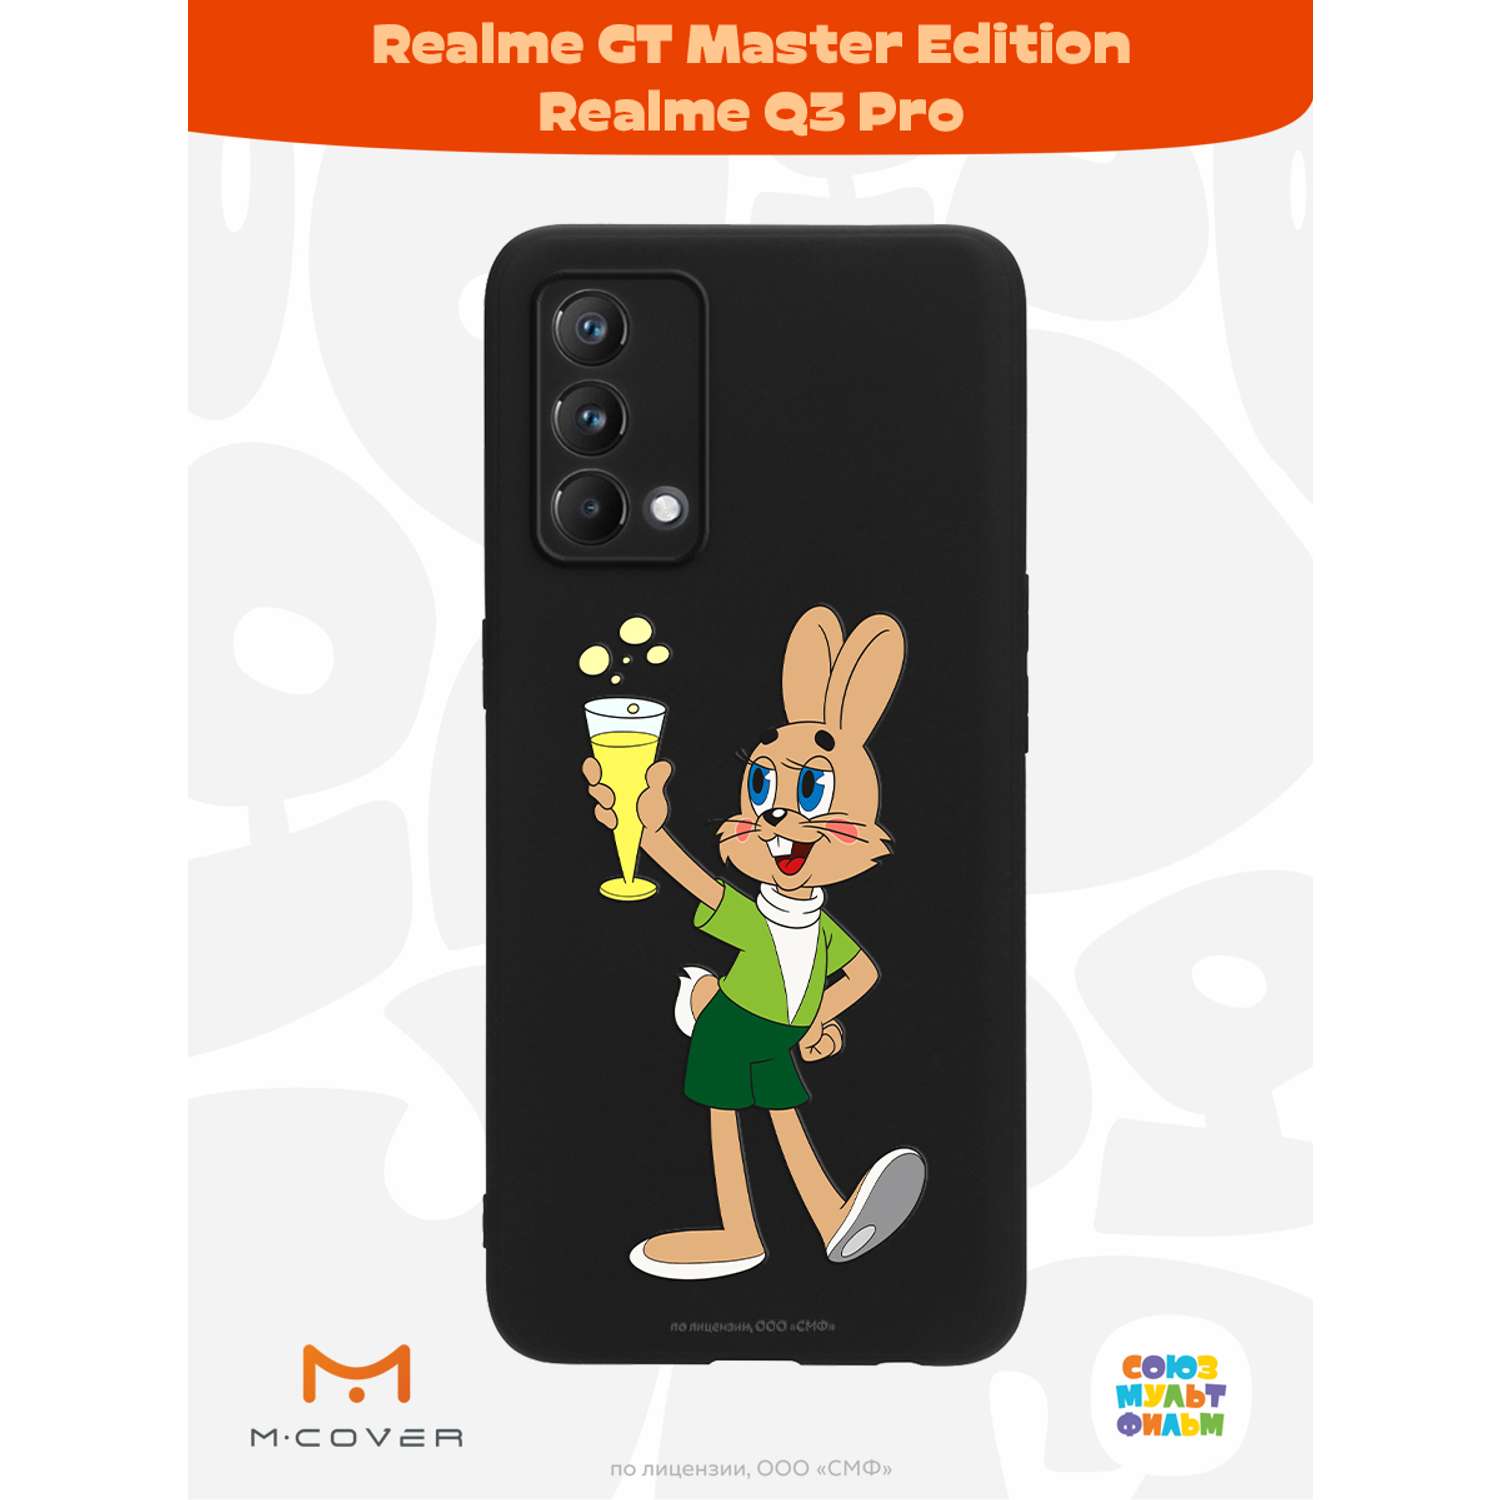 Силиконовый чехол Mcover для смартфона Realme GT Master Edition Q3 Pro Союзмультфильм Заяц с шампанским - фото 2